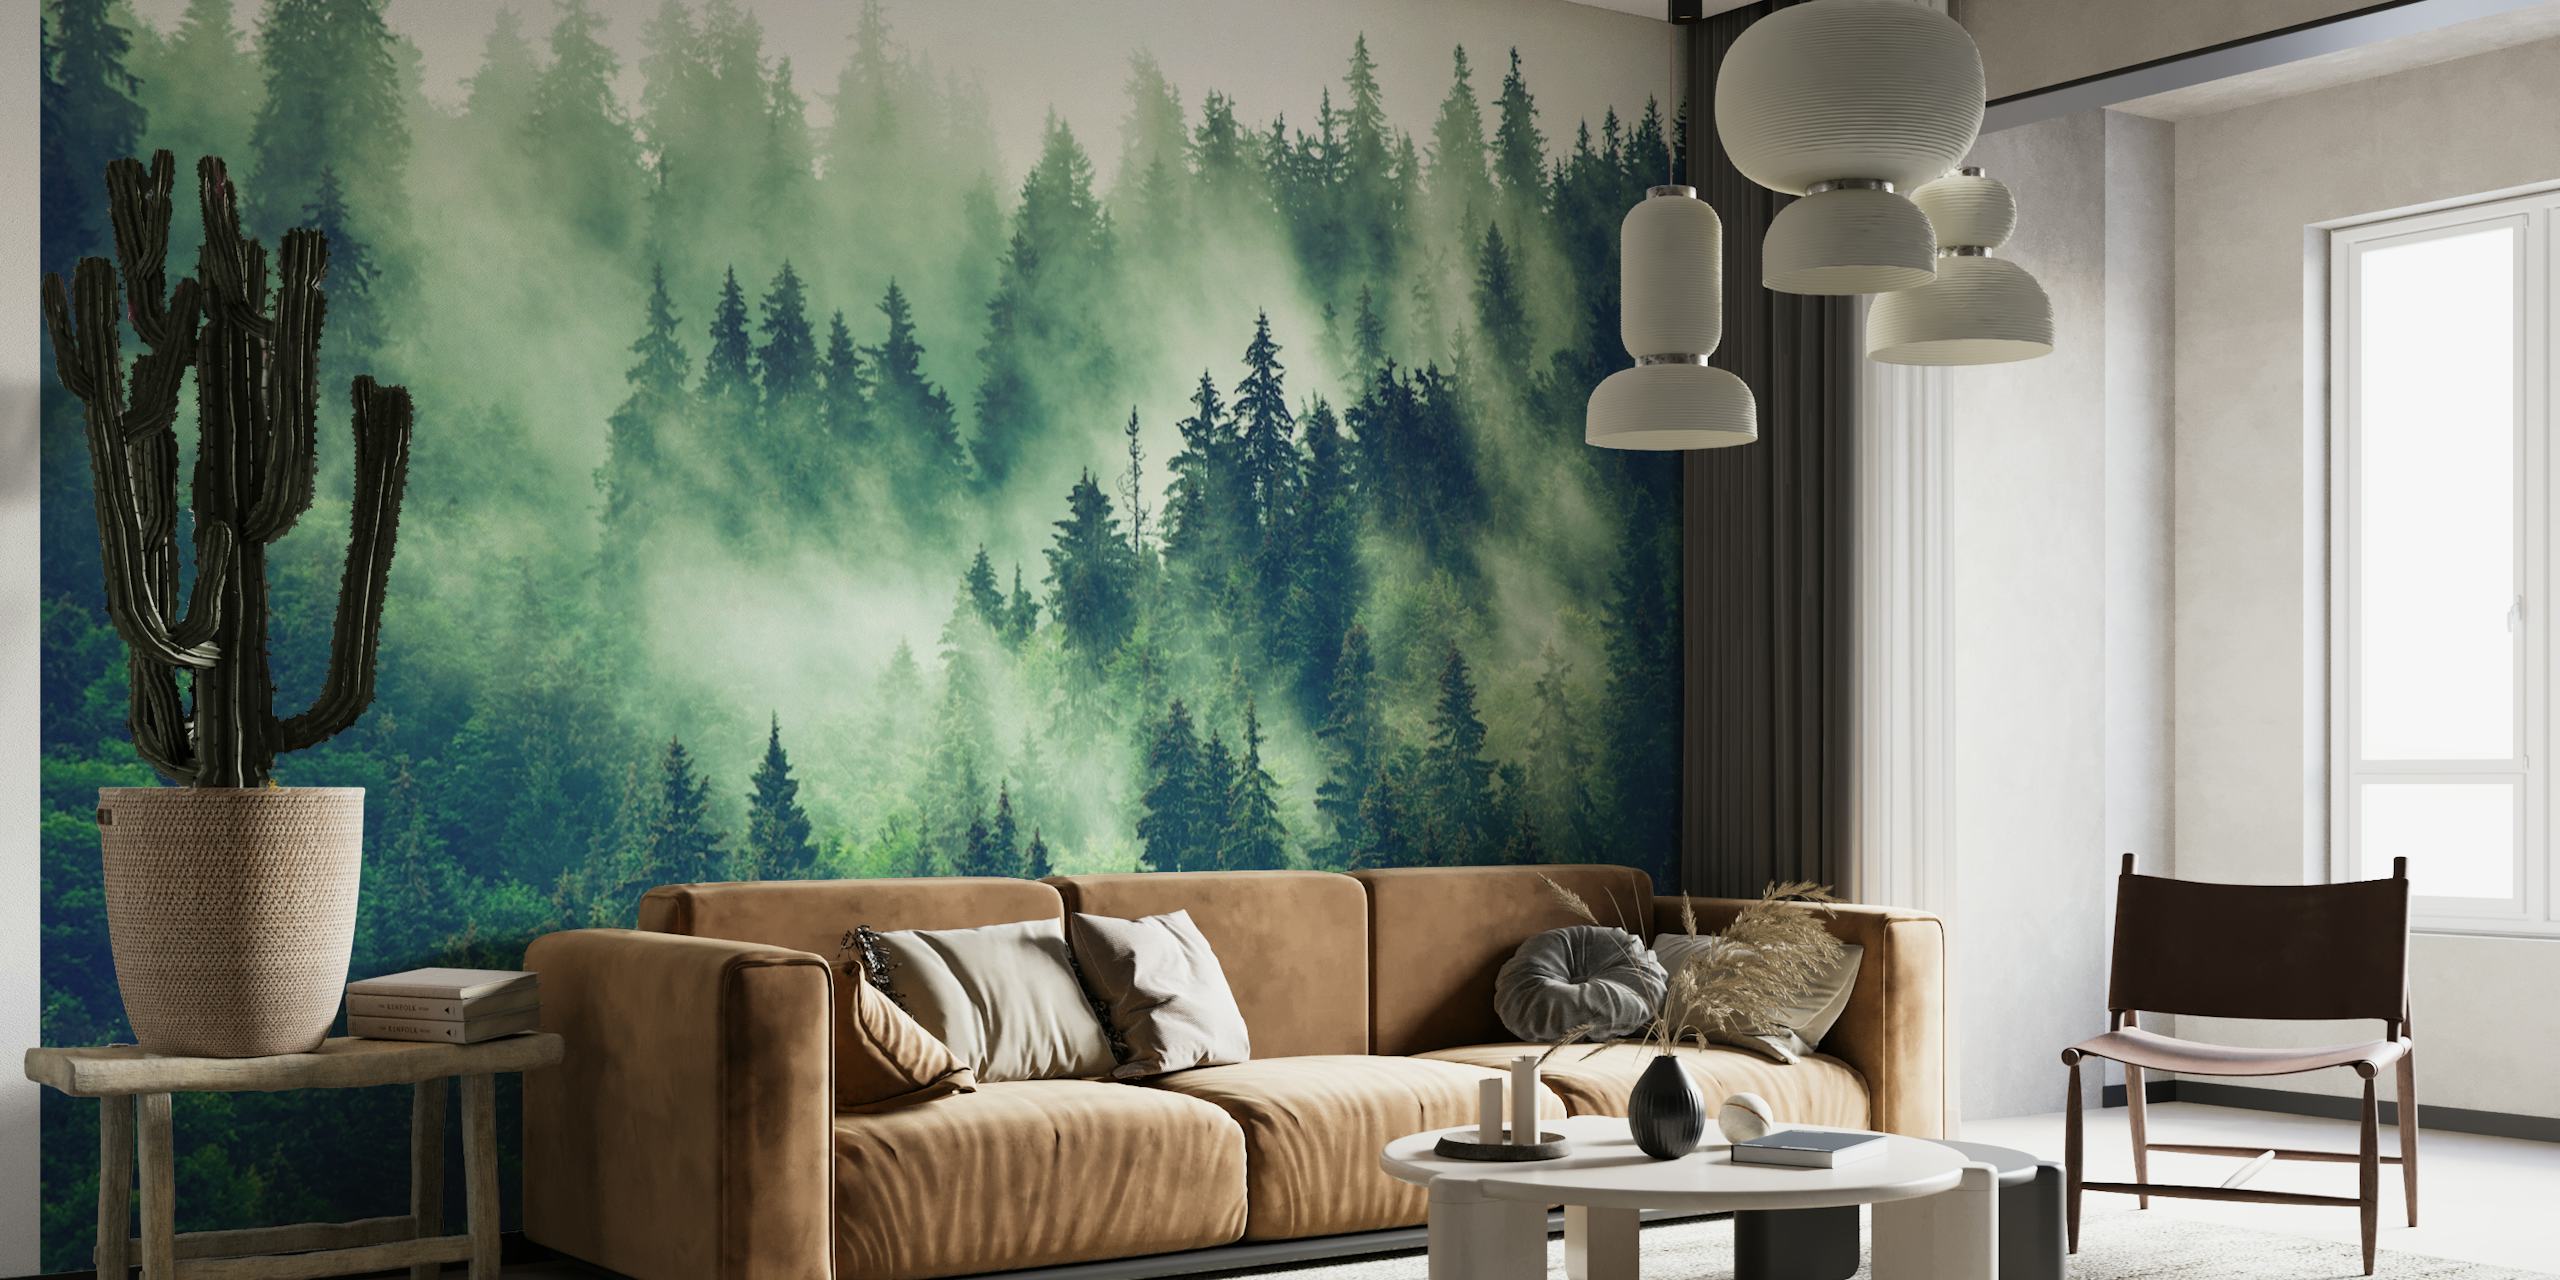 Misty fir forest papel pintado